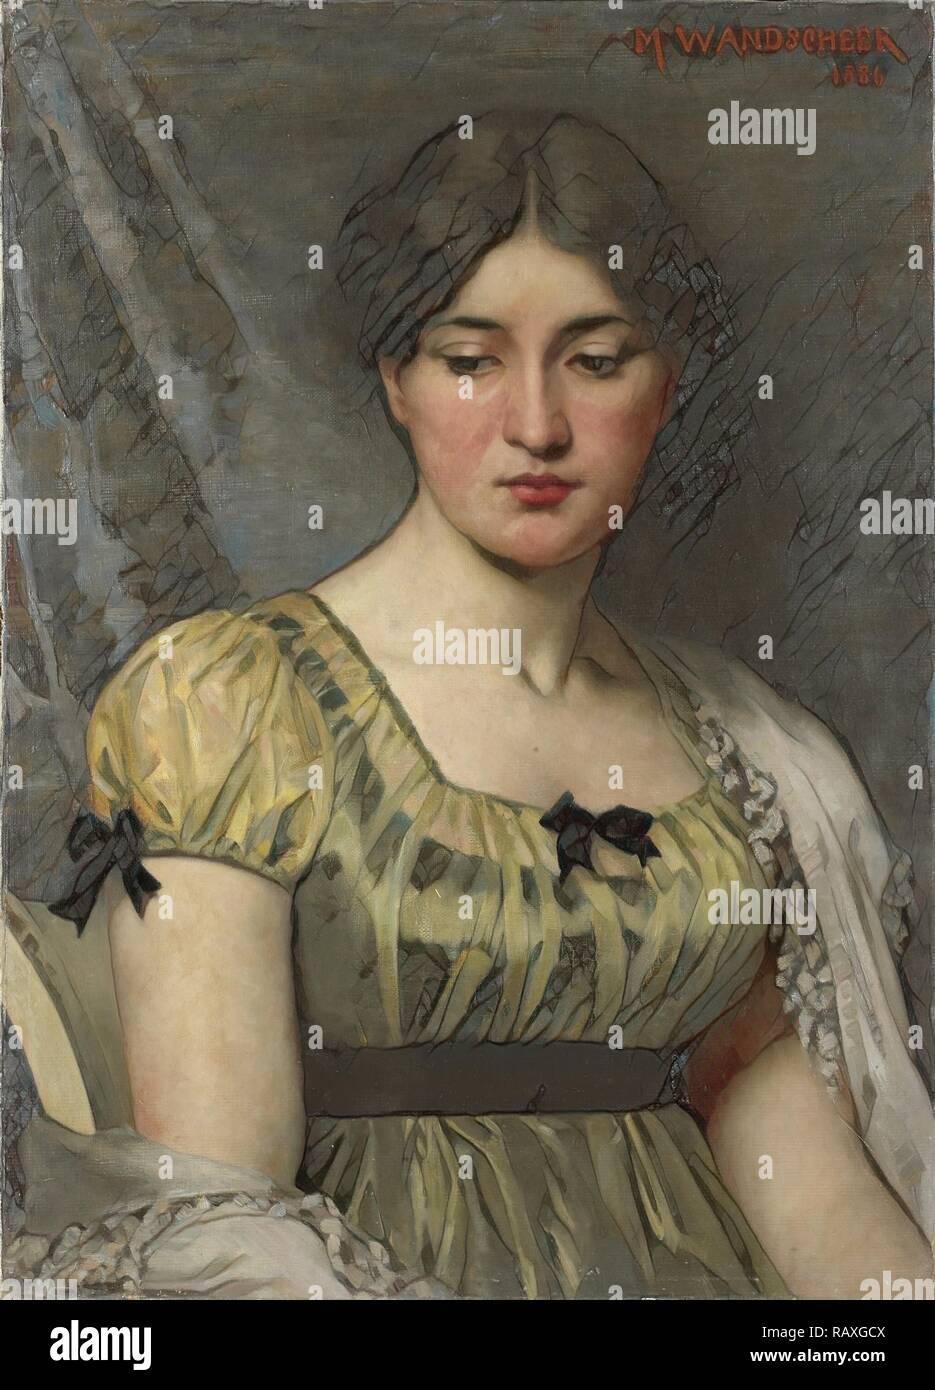 Ritratto di una donna, Marie Wandscheer, 1886. Reinventato da Gibon. Arte Classica con un tocco di moderno reinventato Foto Stock